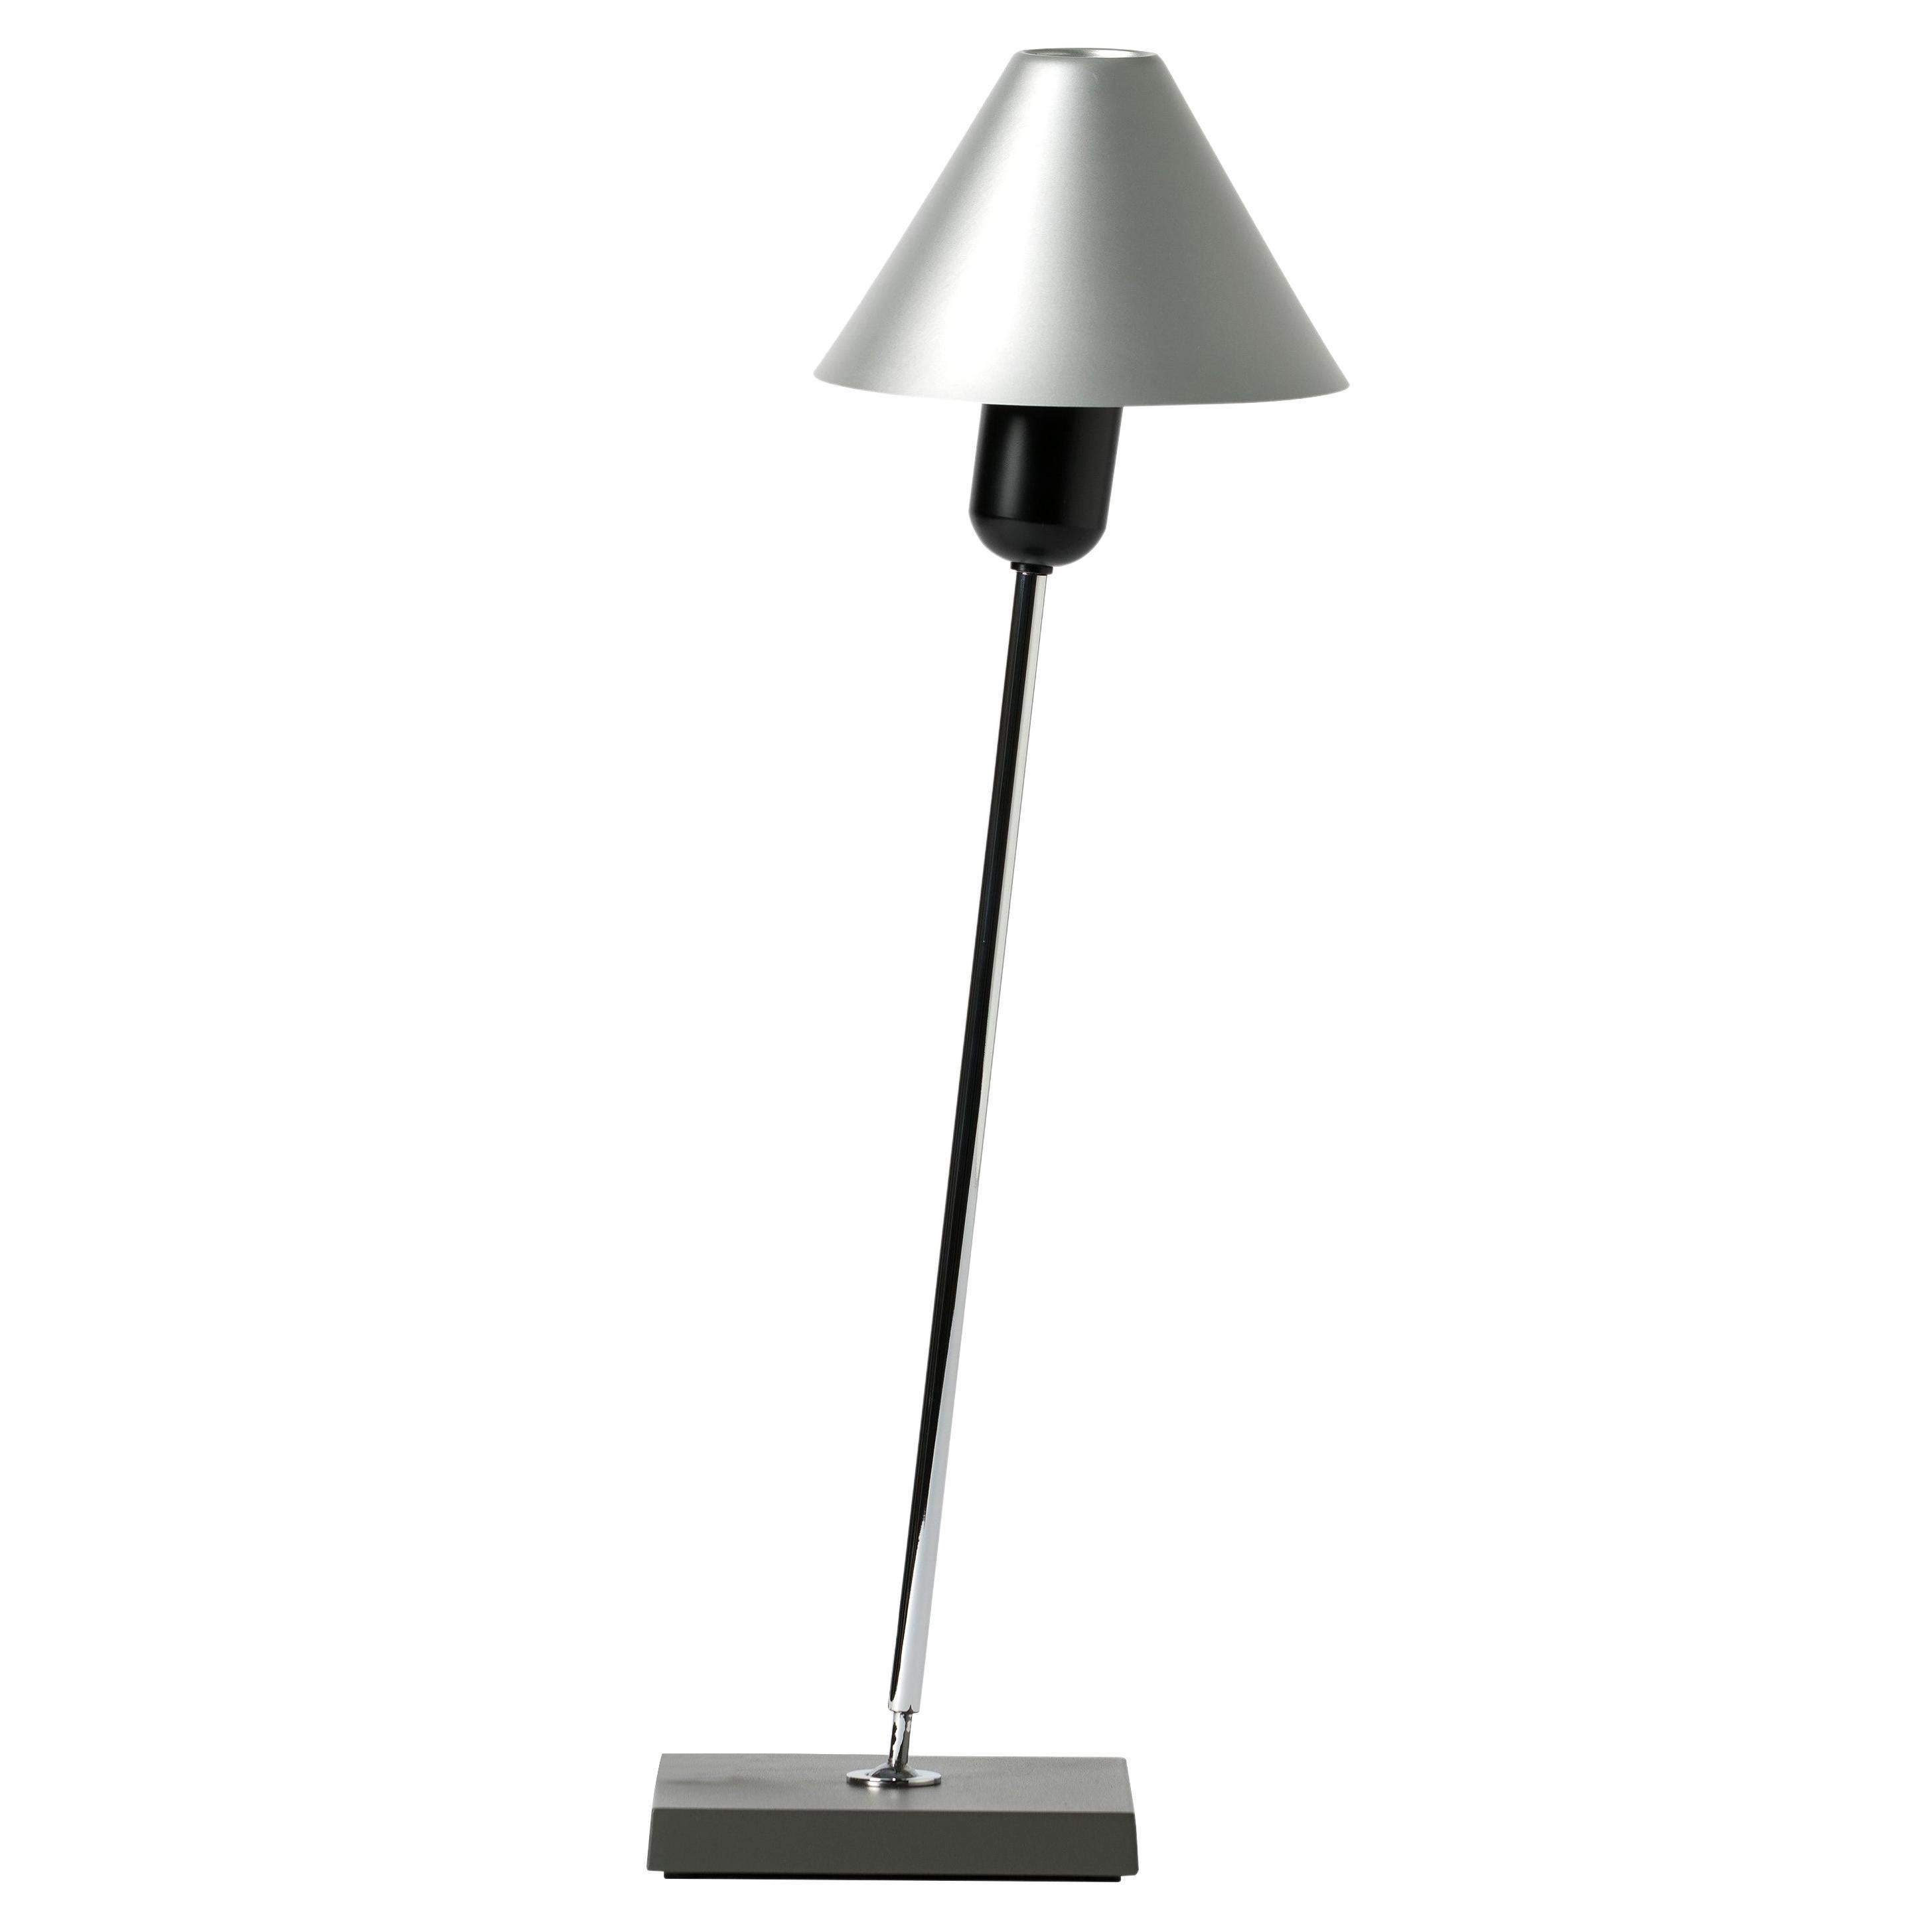 Lampe de bureau Gira en aluminium par J.M. Massana, J.M. Tremoleda, Mariano Ferrer